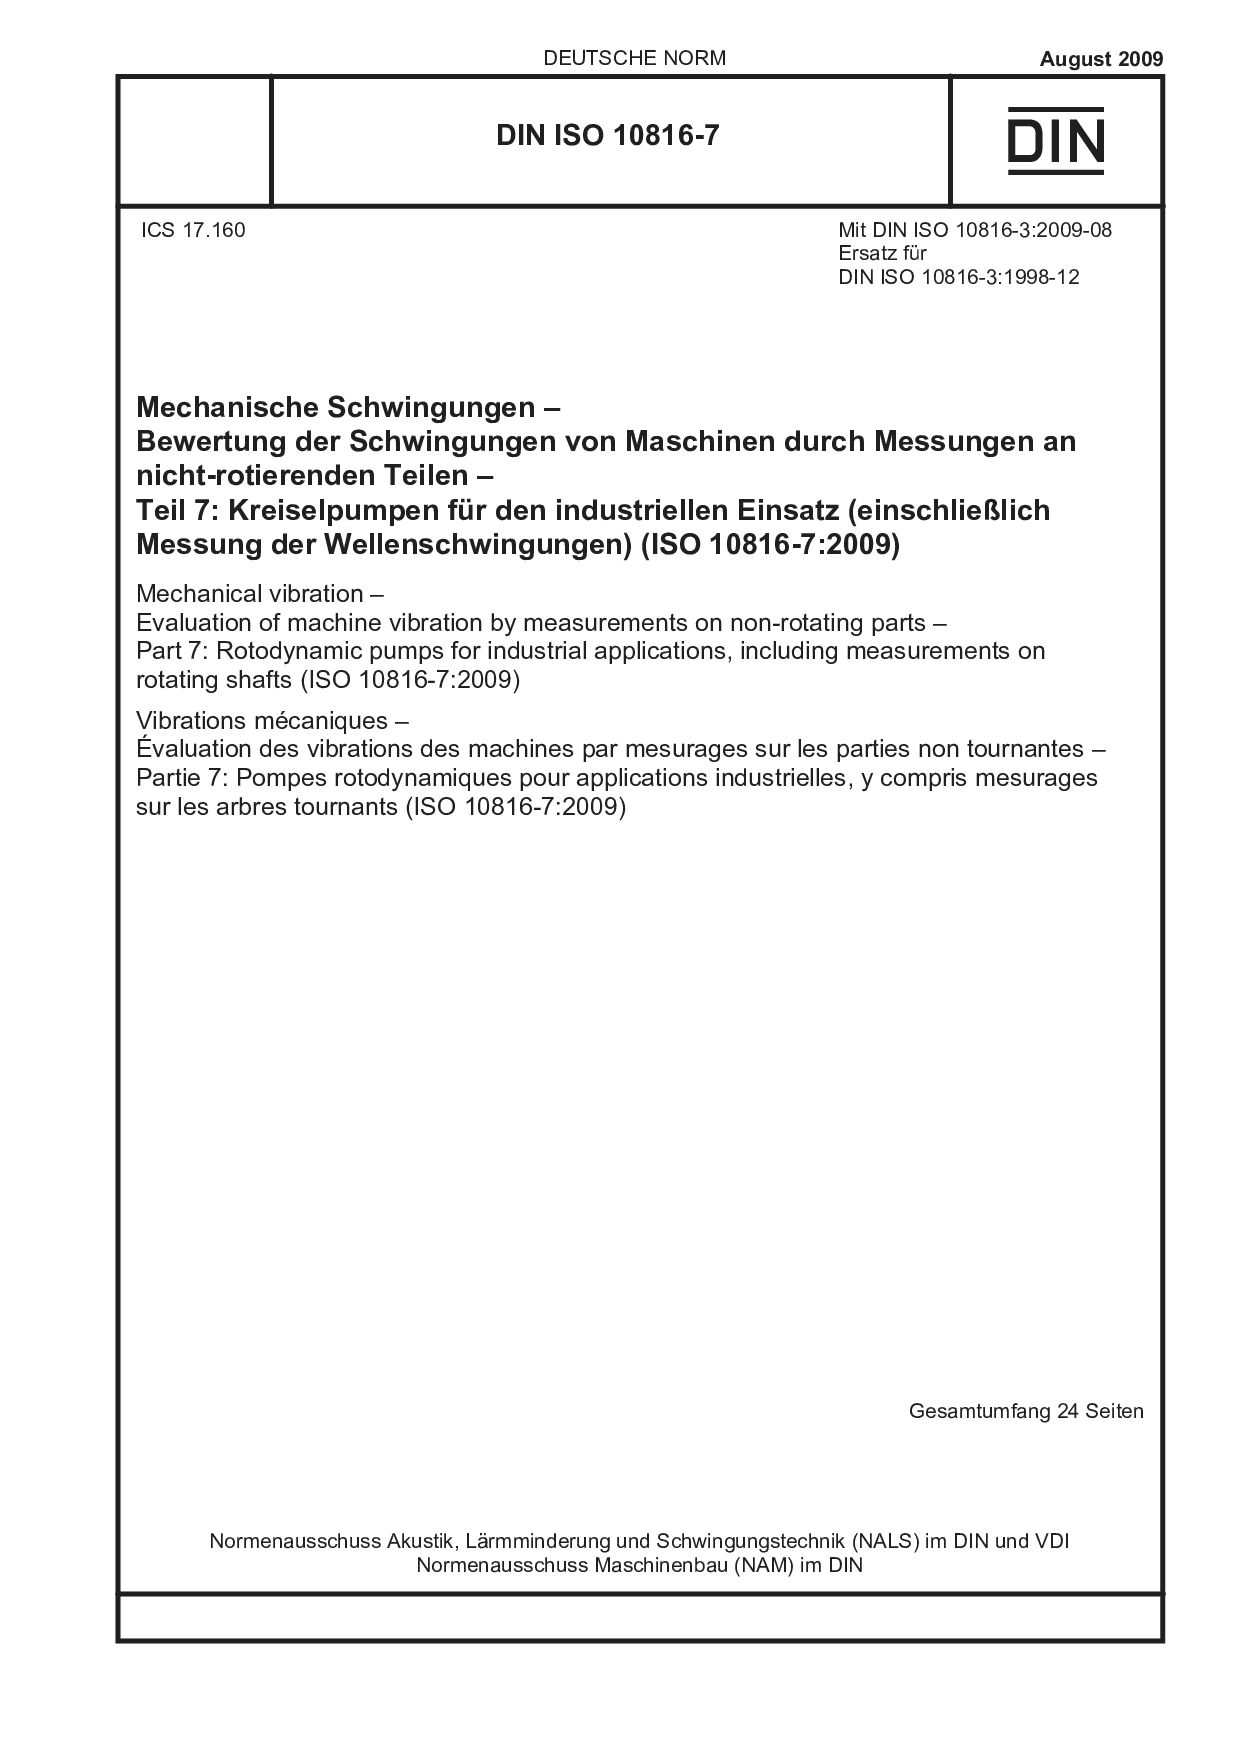 DIN ISO 10816-7:2009封面图